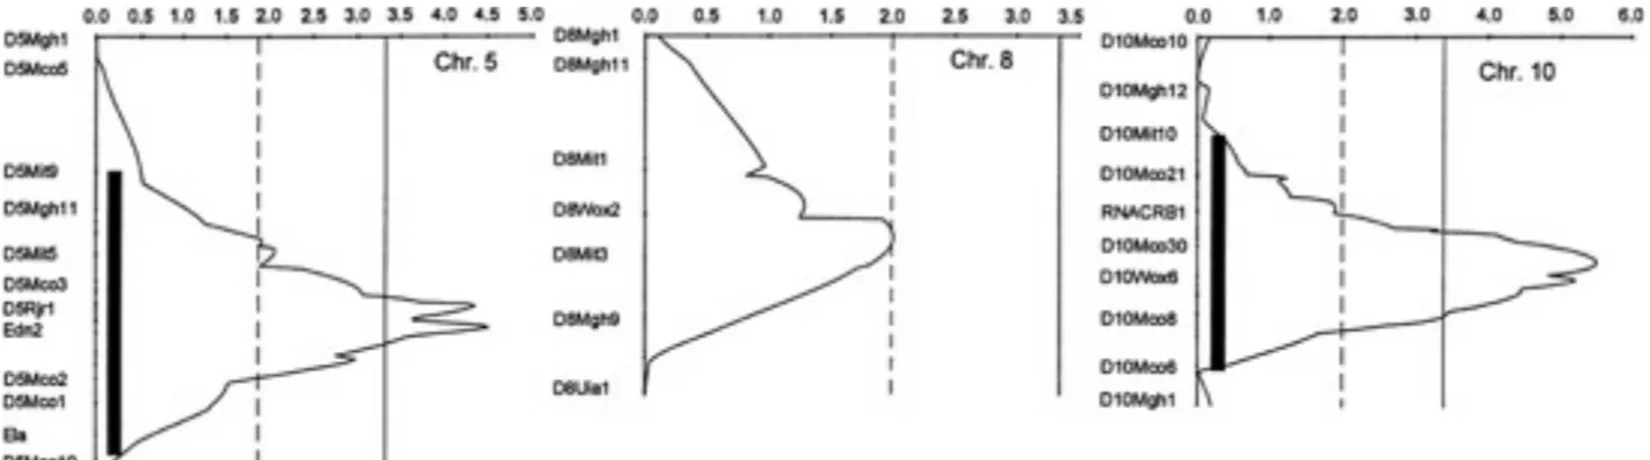 Figure 6: Exemple d’études de liaison pour les chromosomes 5, 8 et 10  